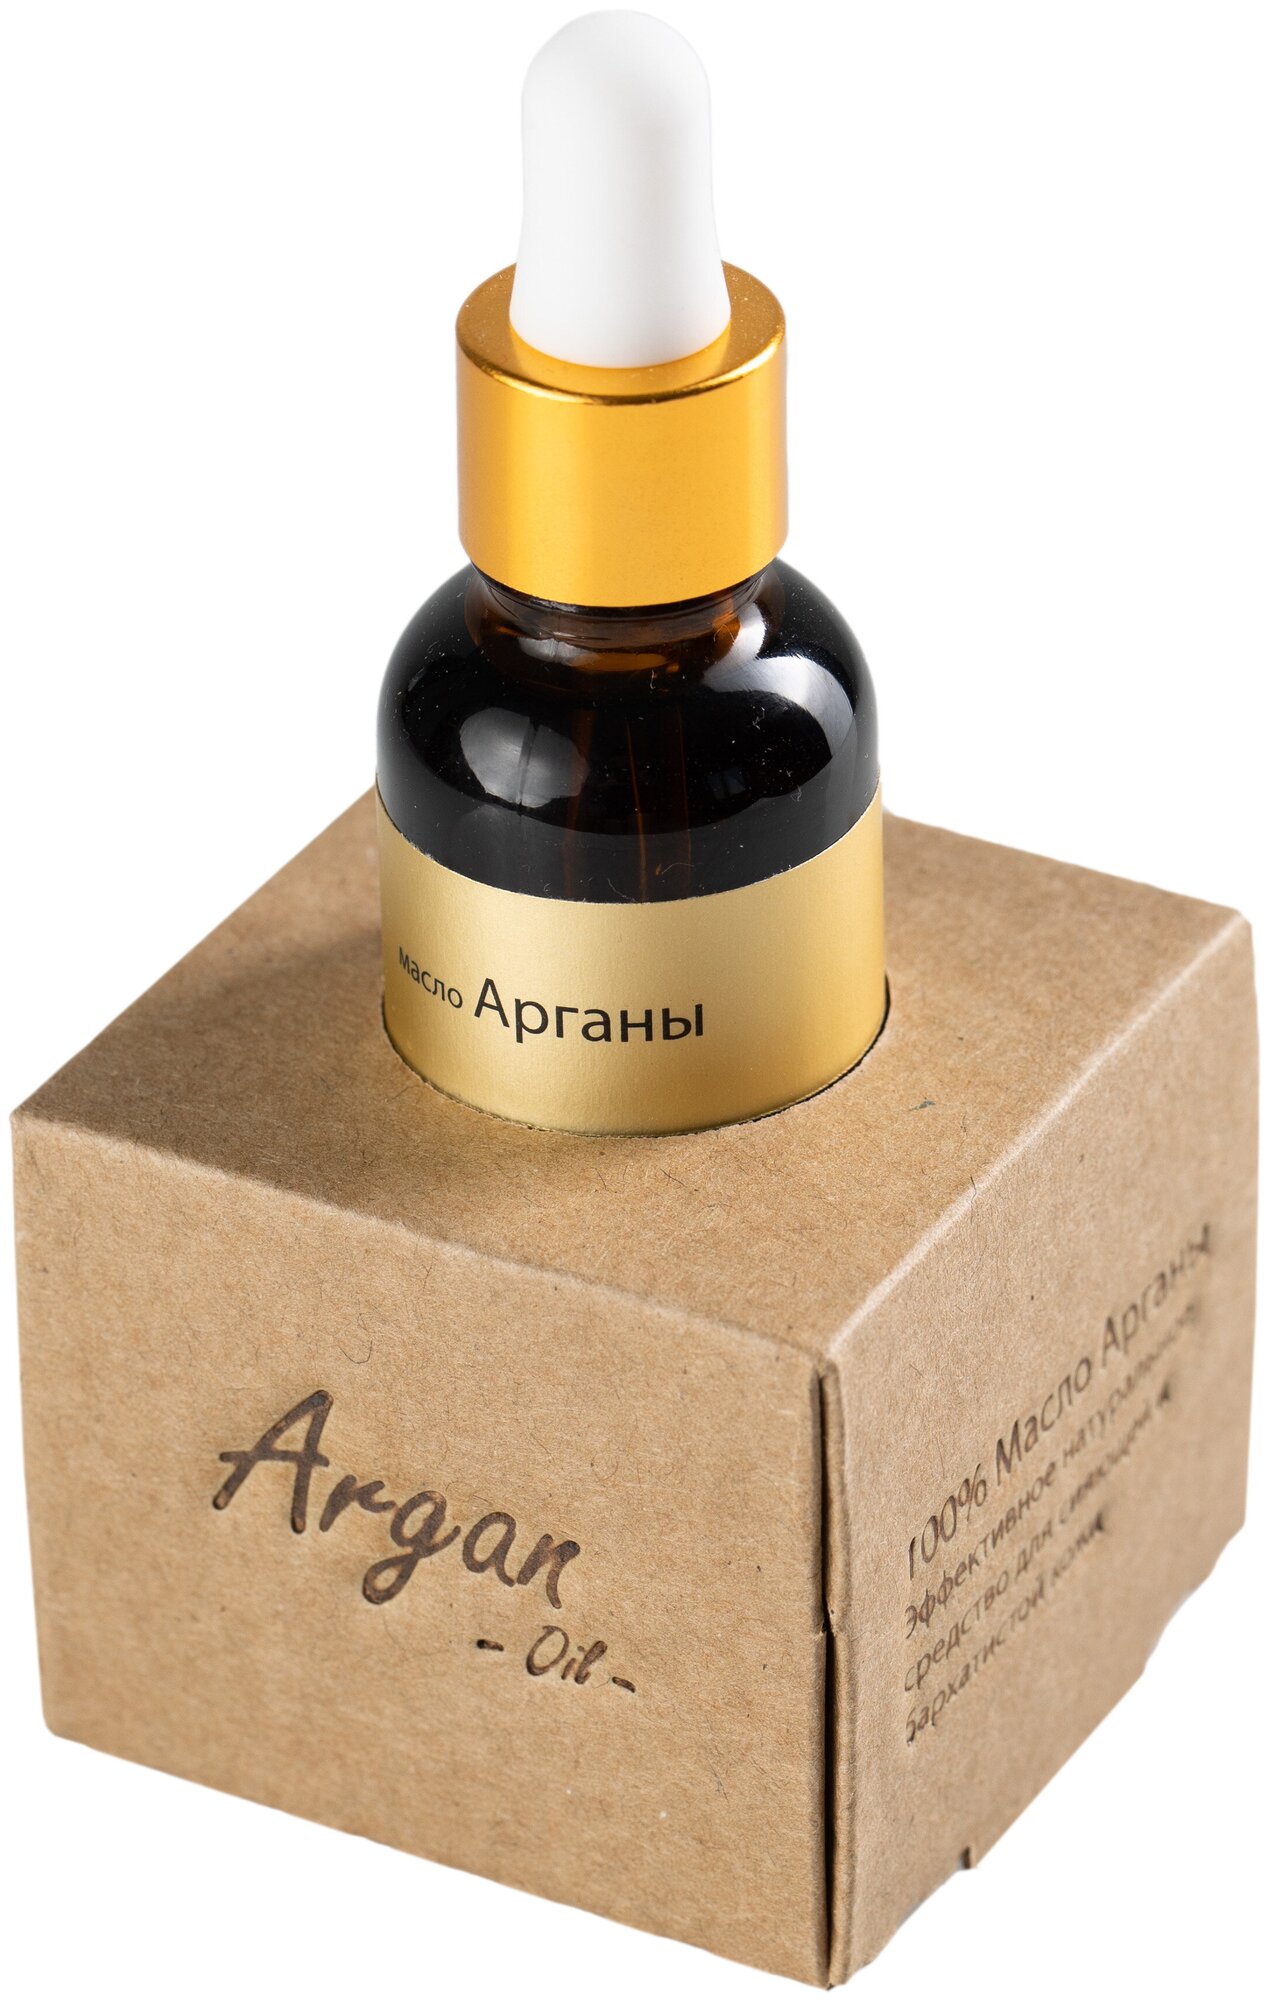 Аргановое масло из Марокко, масло для лица и волос Premium, 30 мл. / Мыльные орехи